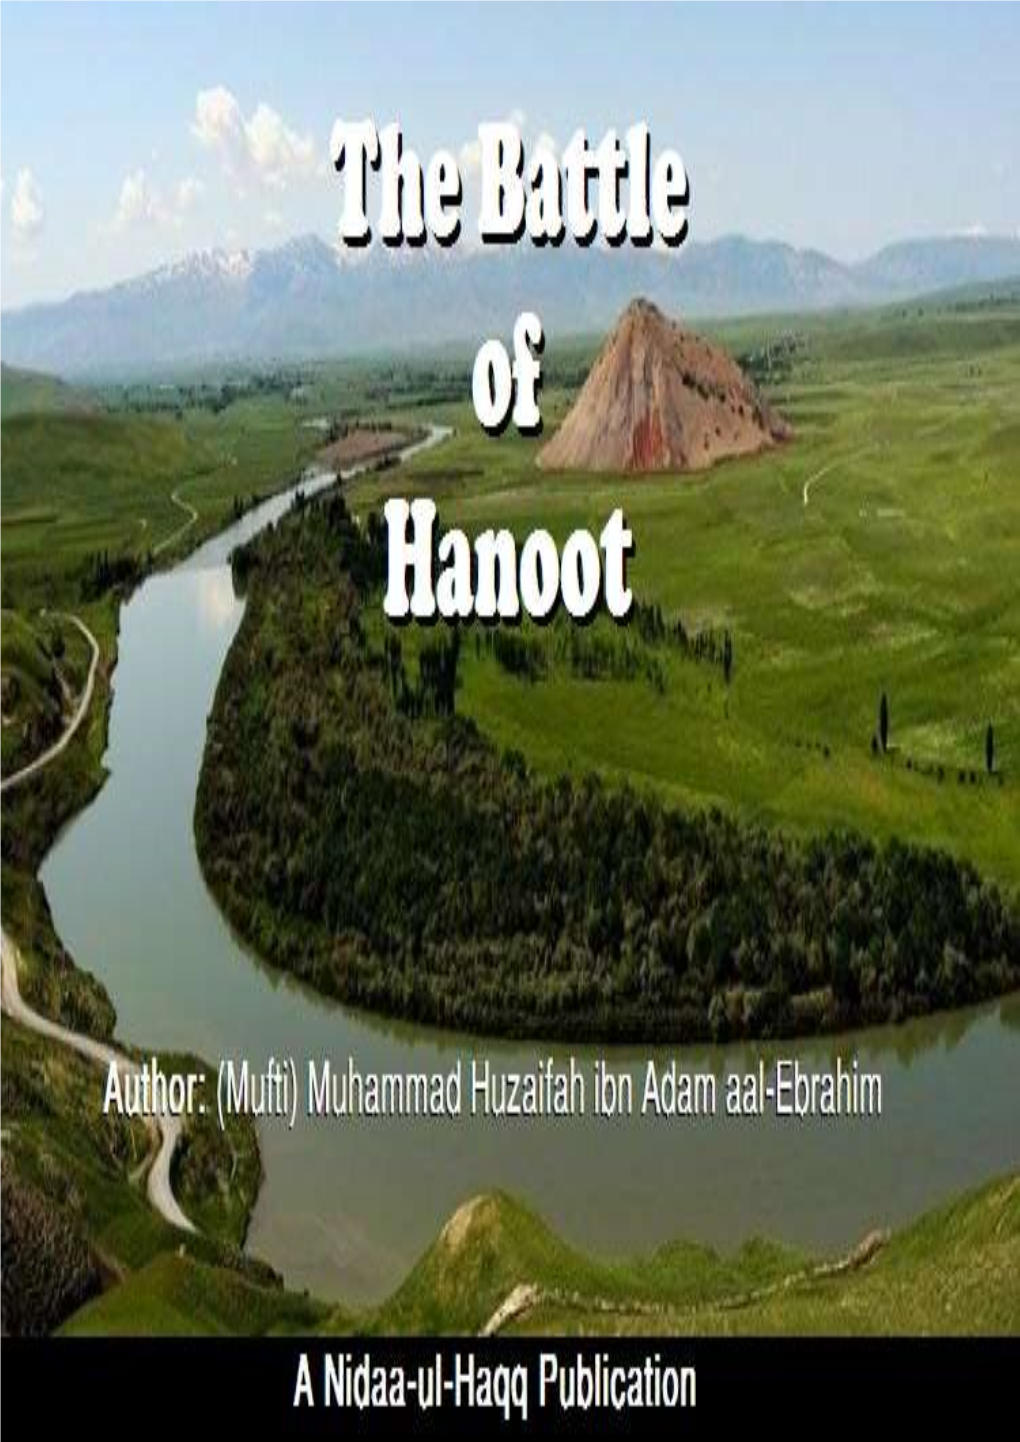 The Battle of Hanoot